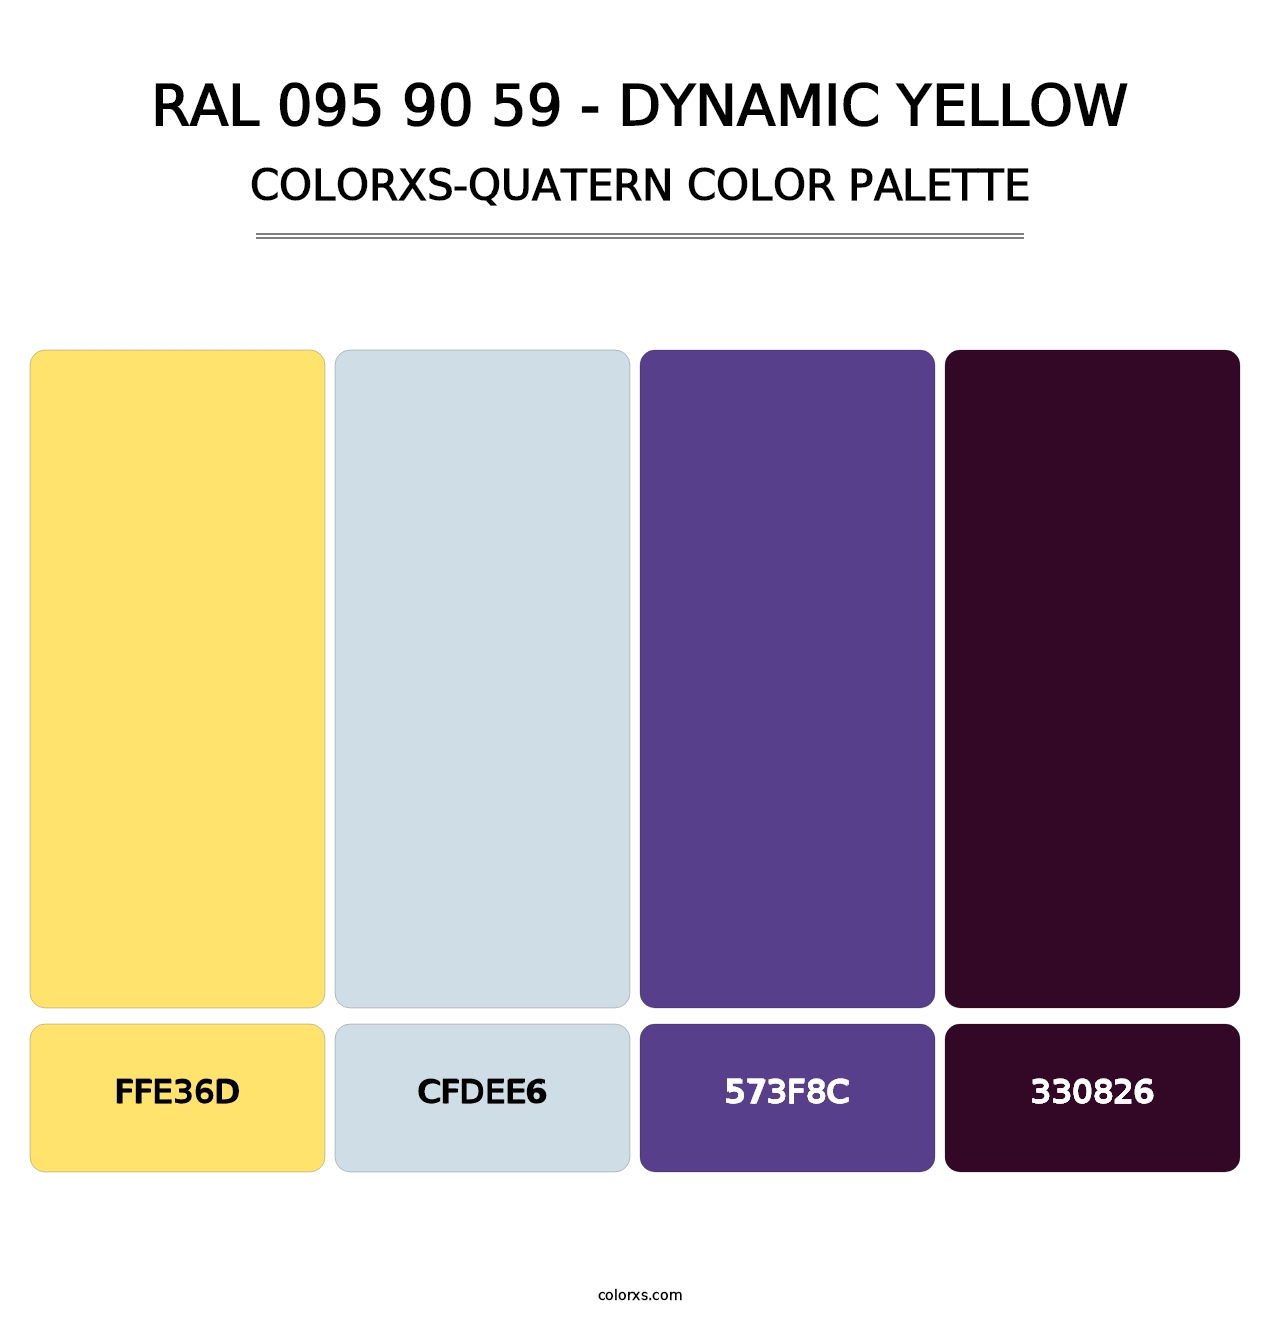 RAL 095 90 59 - Dynamic Yellow - Colorxs Quatern Palette